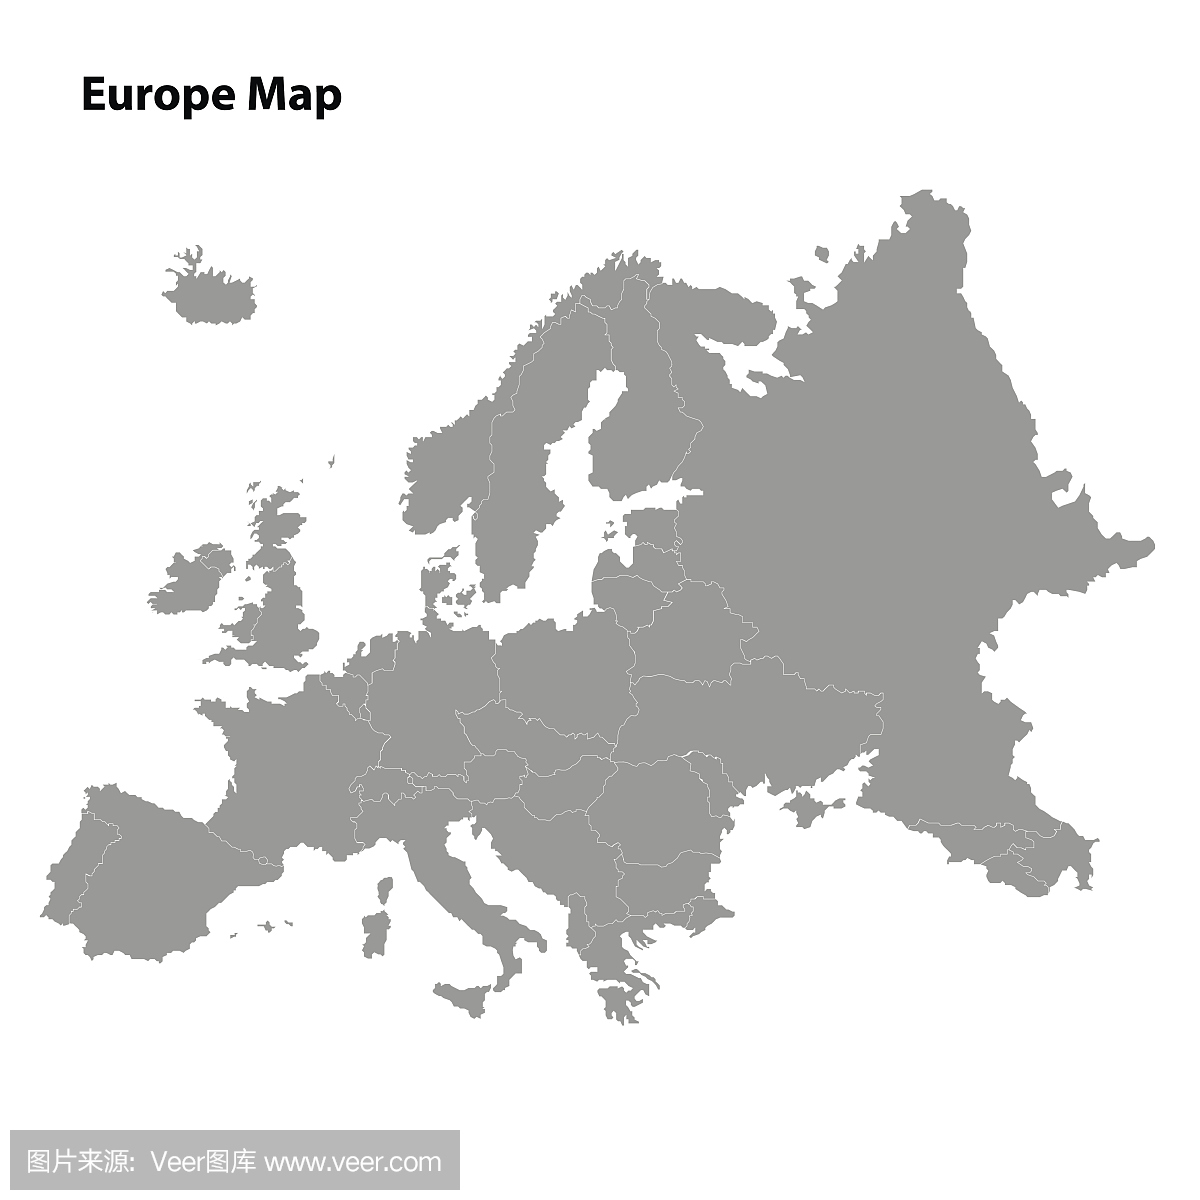 欧洲旅游地图中文版, 欧洲电子地图全图高清版,欧洲旅游景点地图 1031